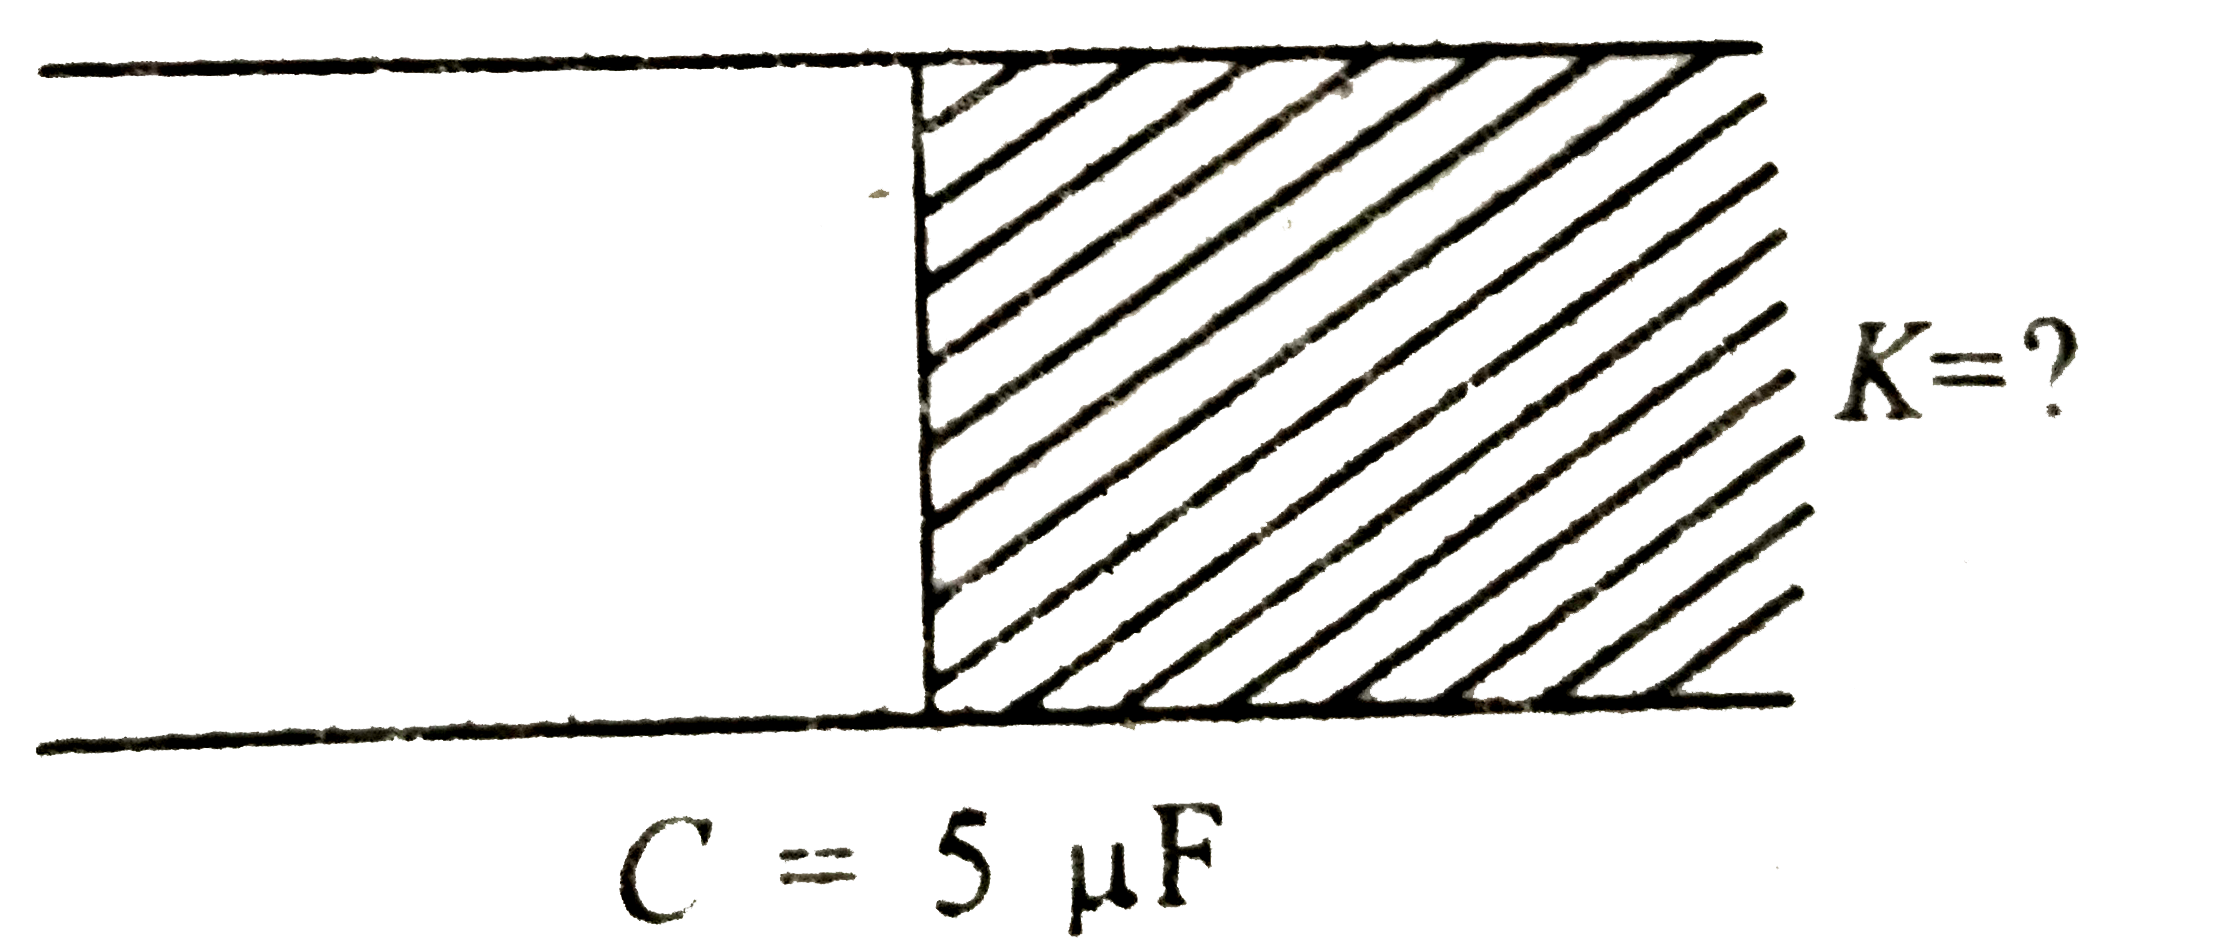 किसी समान्तर प्लेट संधारित्र की धारिता 2 mu F है । इसके आधे भाग को चित्रानुसार एक परावैद्युत पदार्थ से भरा जाता है तो इसकी धारिता 5 mu F हो जाती है। परावैद्युतांक k का मान ज्ञात कीजिए ।